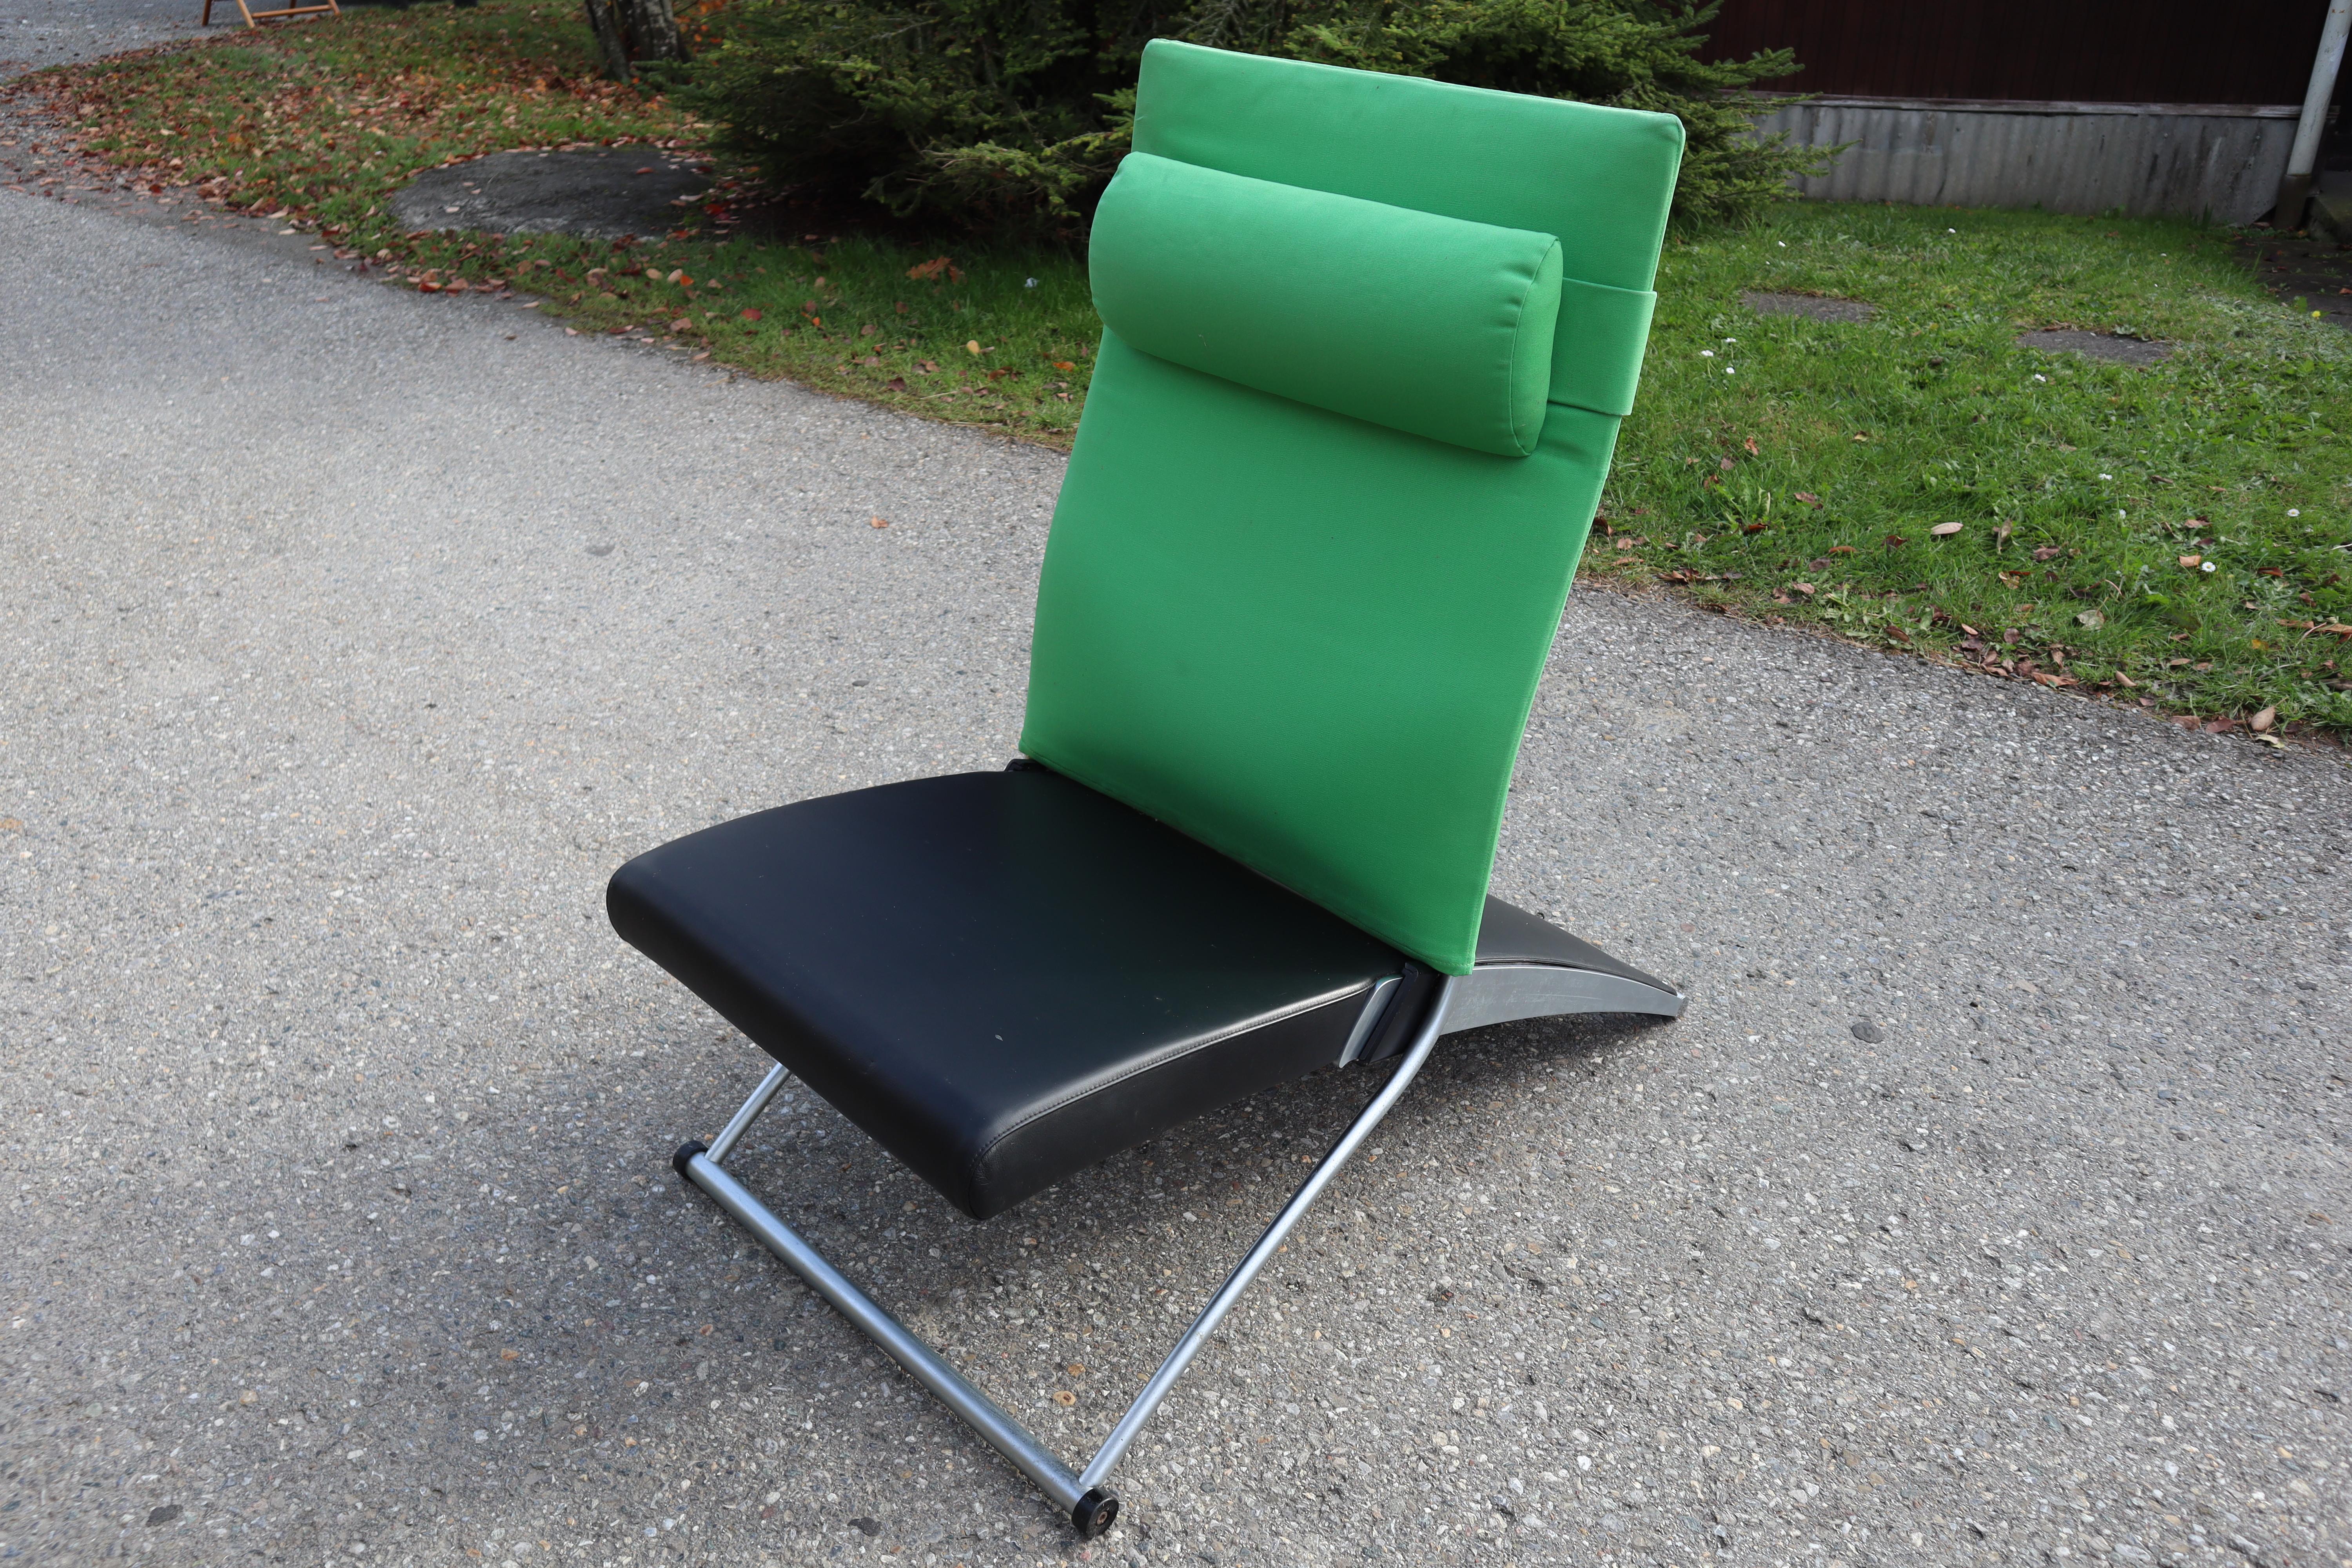 La chaise X, élégante et fonctionnelle, de Joachim Nees pour Interprofil, en Allemagne, a été récompensée par de nombreux prix.

Structure en métal peint en argent, assise recouverte de cuir noir et dossier recouvert de tissu vert.

Un soutien